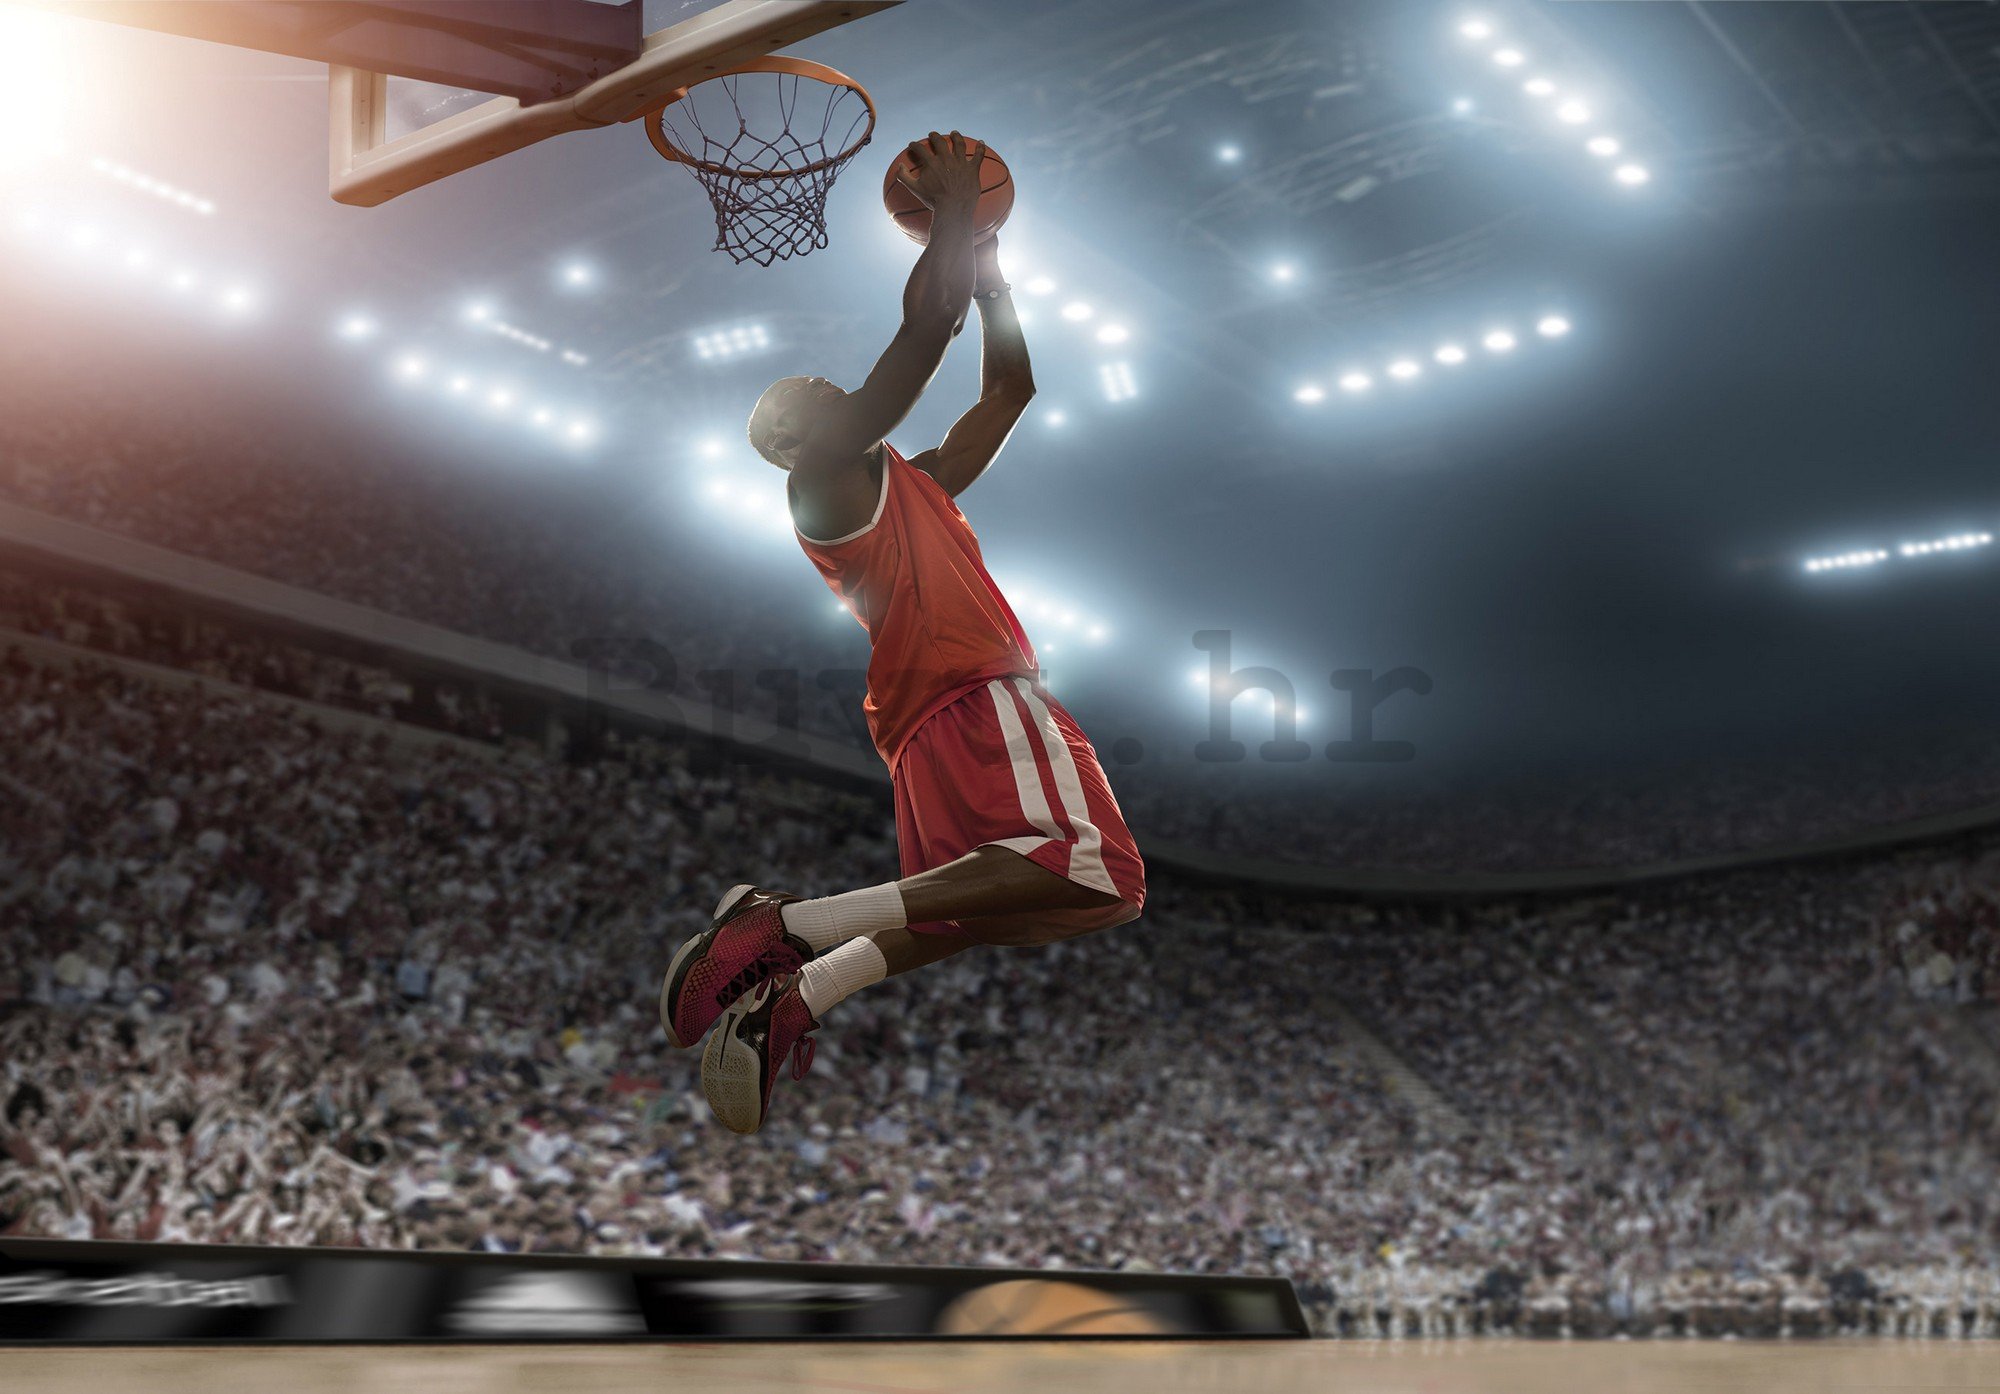 Vlies foto tapeta: Basketball player - 416x254 cm